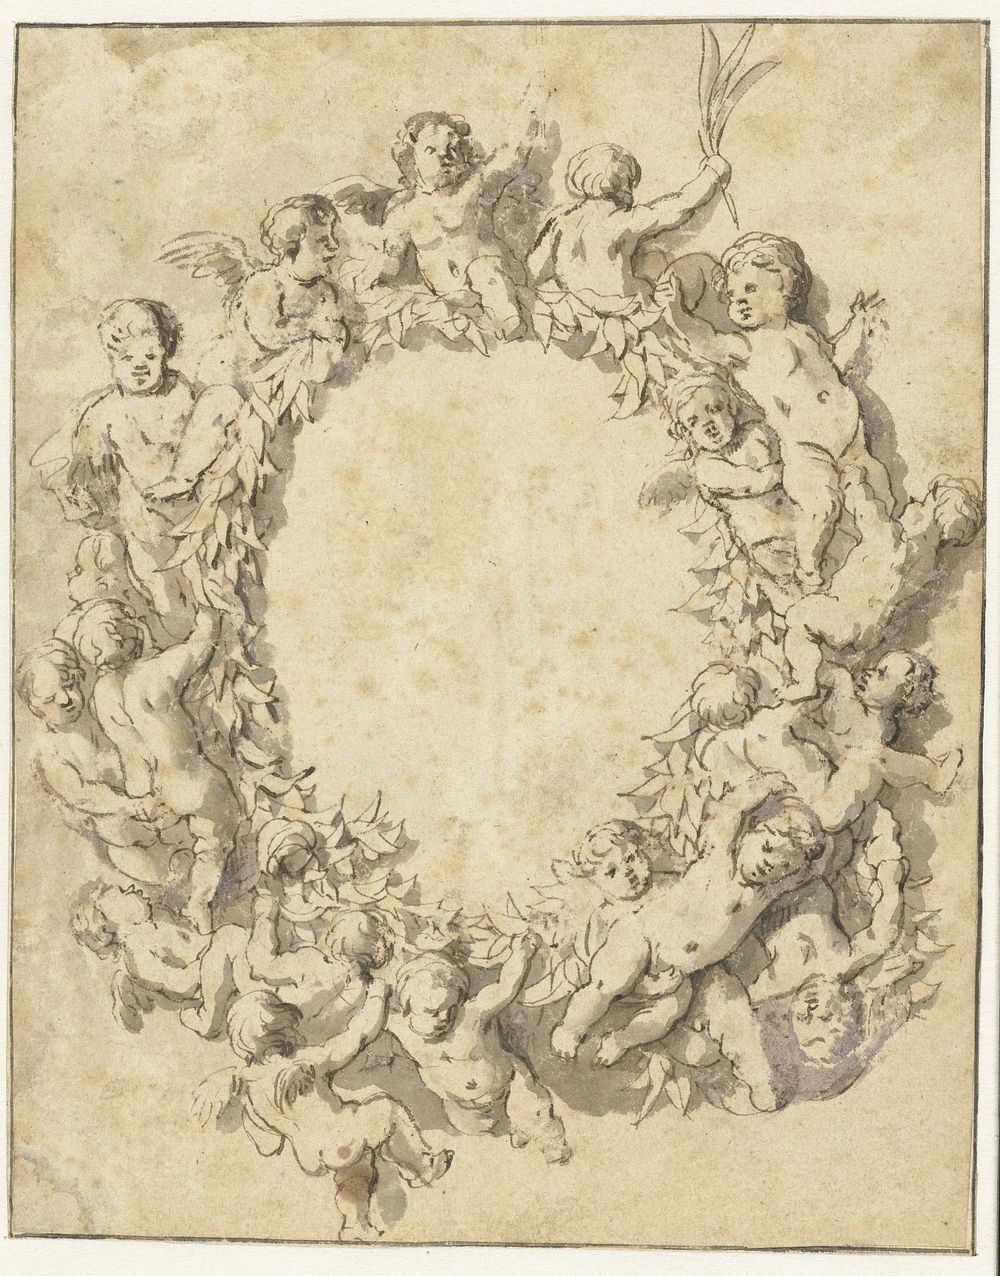 Lauwerkrans omgeven met putti (1637 - 1697) by Jan de Bray and Nicolaes Pietersz Berchem